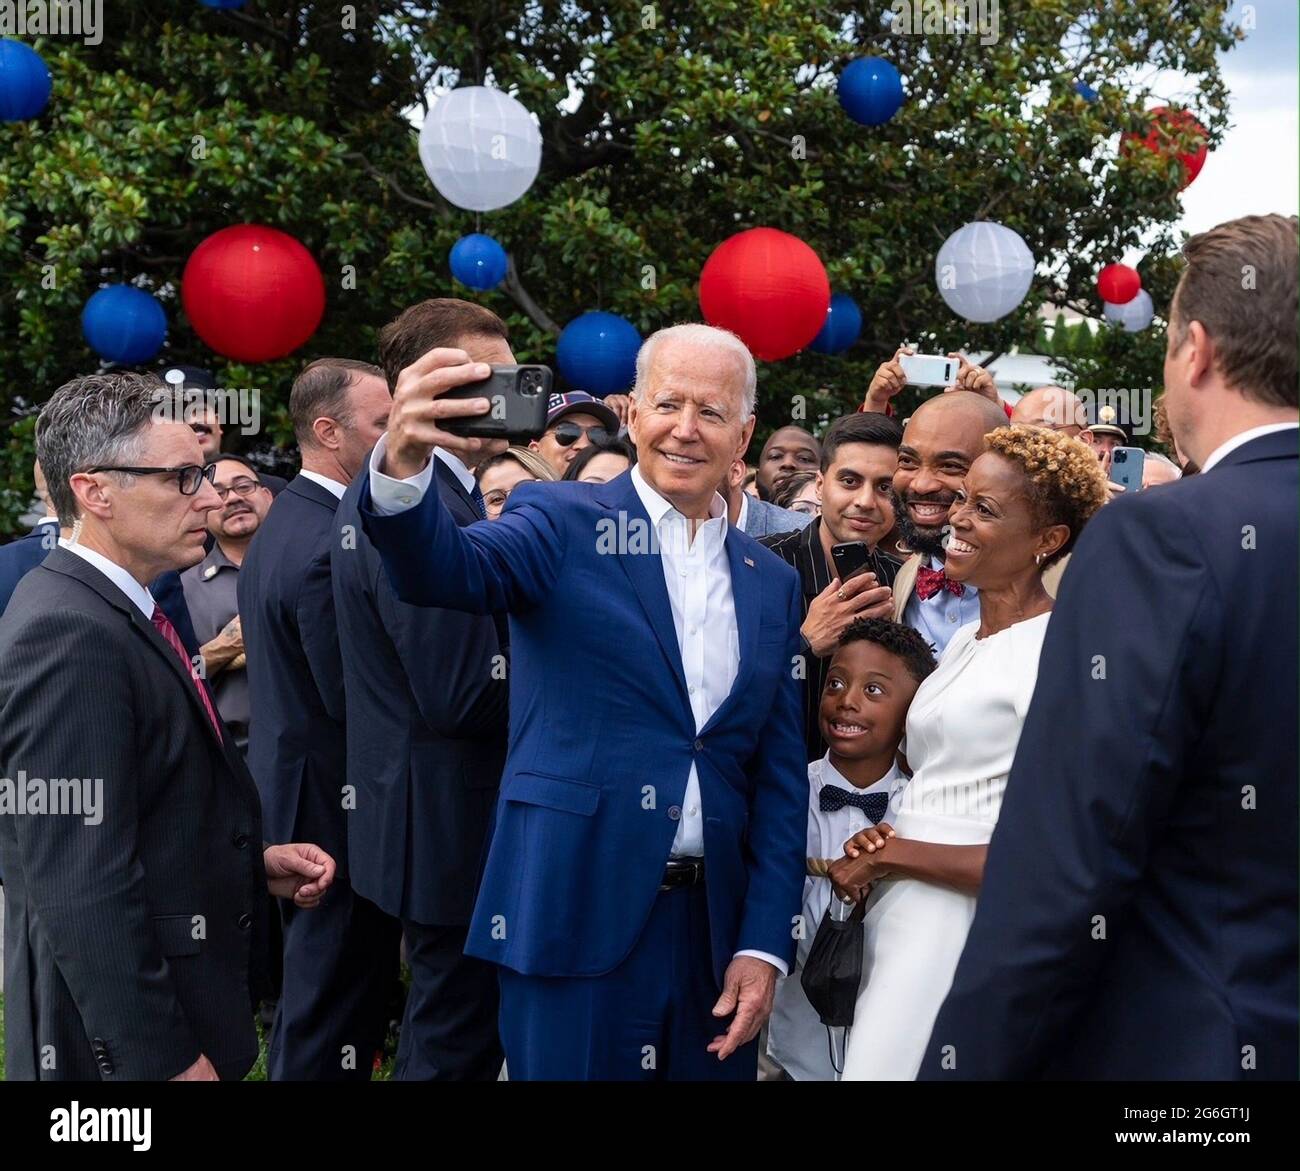 Le président américain Joe Biden prend un selfie avec ses invités lors des célébrations de la fête de l'indépendance sur la pelouse du Sud à la Maison Blanche le 4 juillet 2021 à Washington, D.C. Banque D'Images